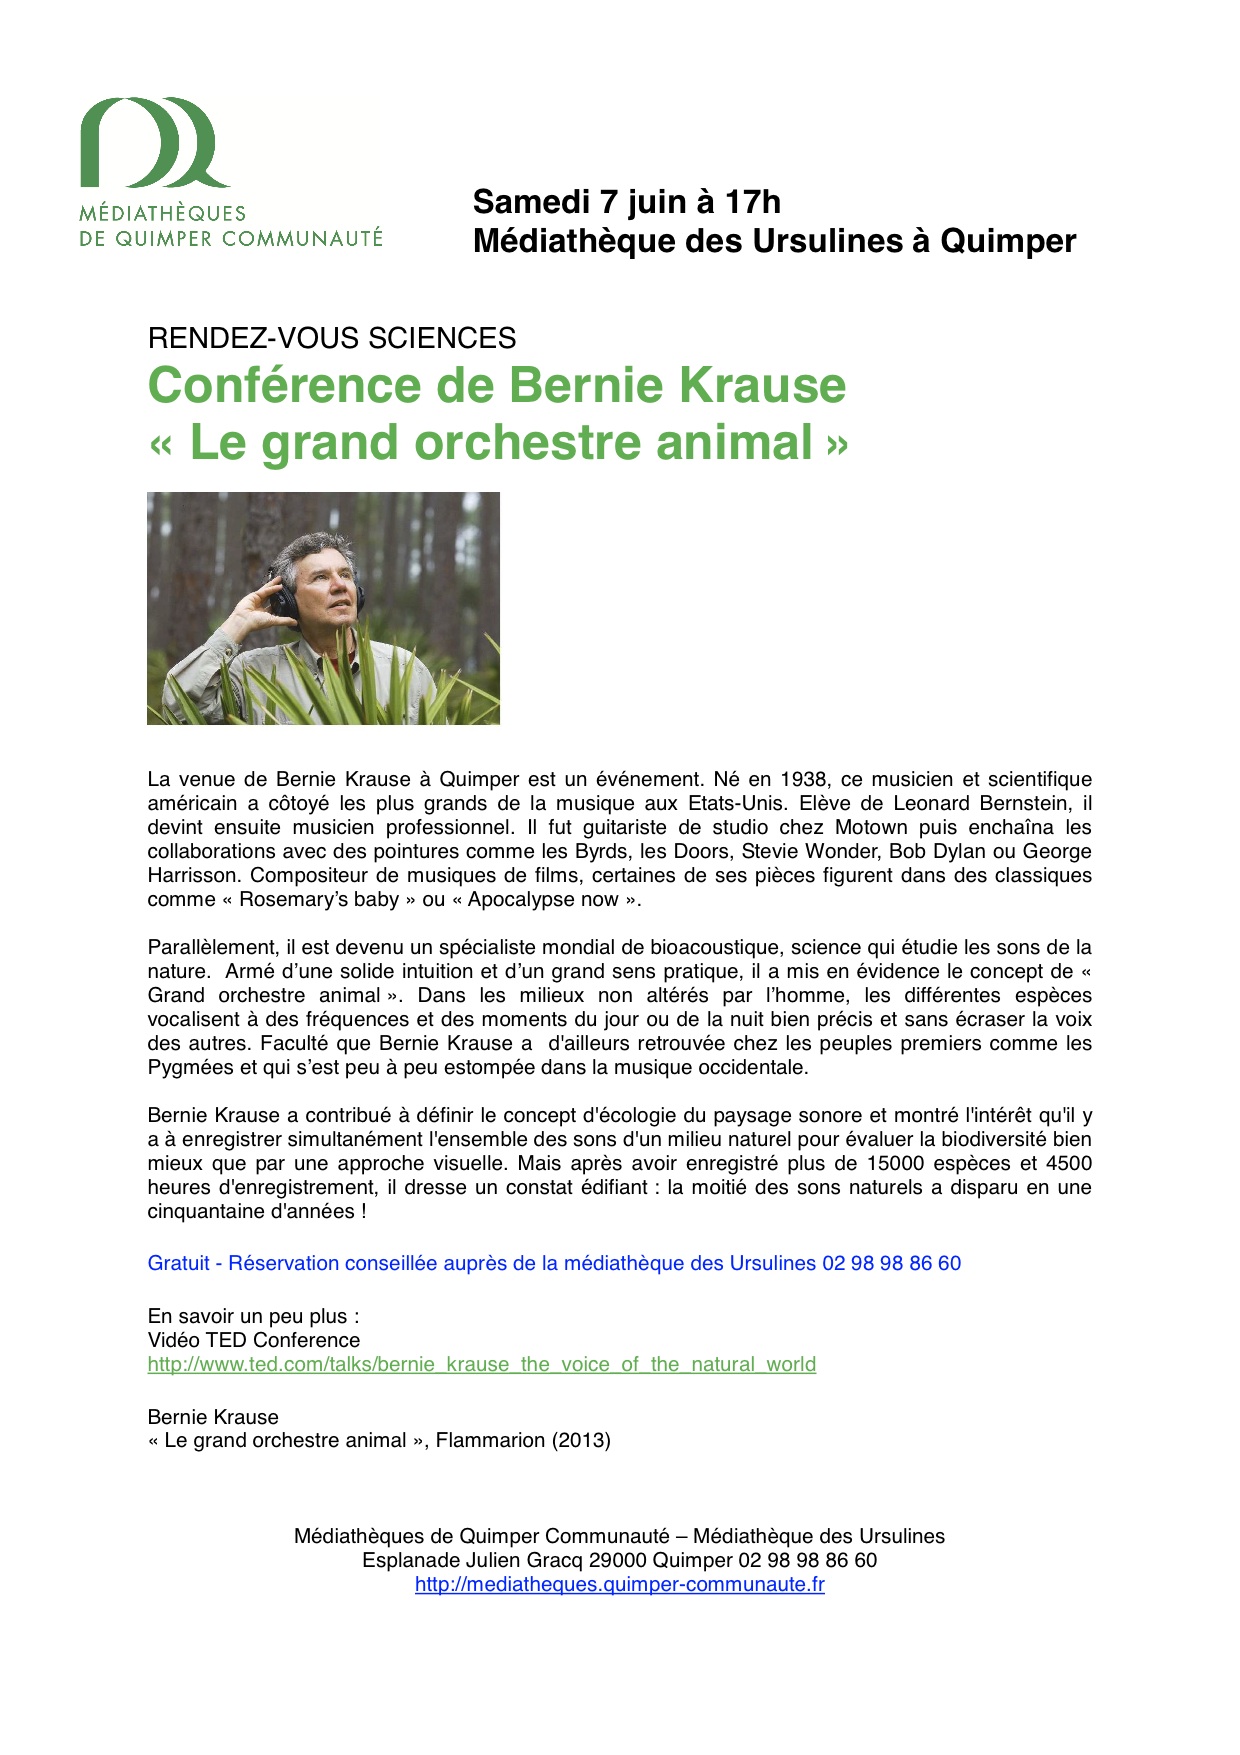 http://codelab.fr/up/CONFERENCE-scientifique-B-Krause-a-Quimper-le-7-juin.jpg